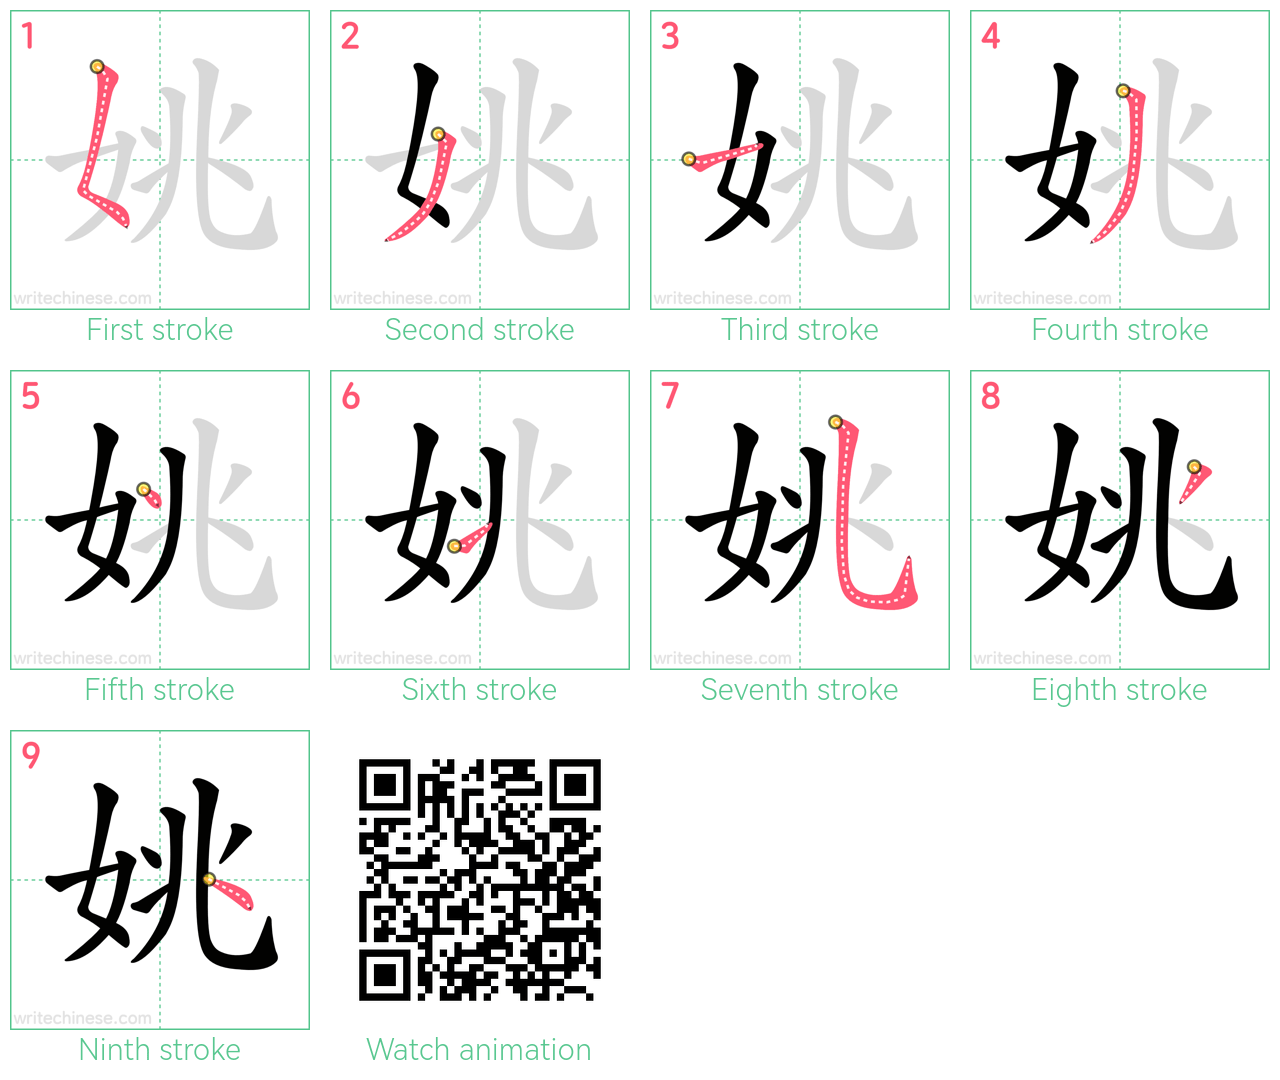 姚 step-by-step stroke order diagrams